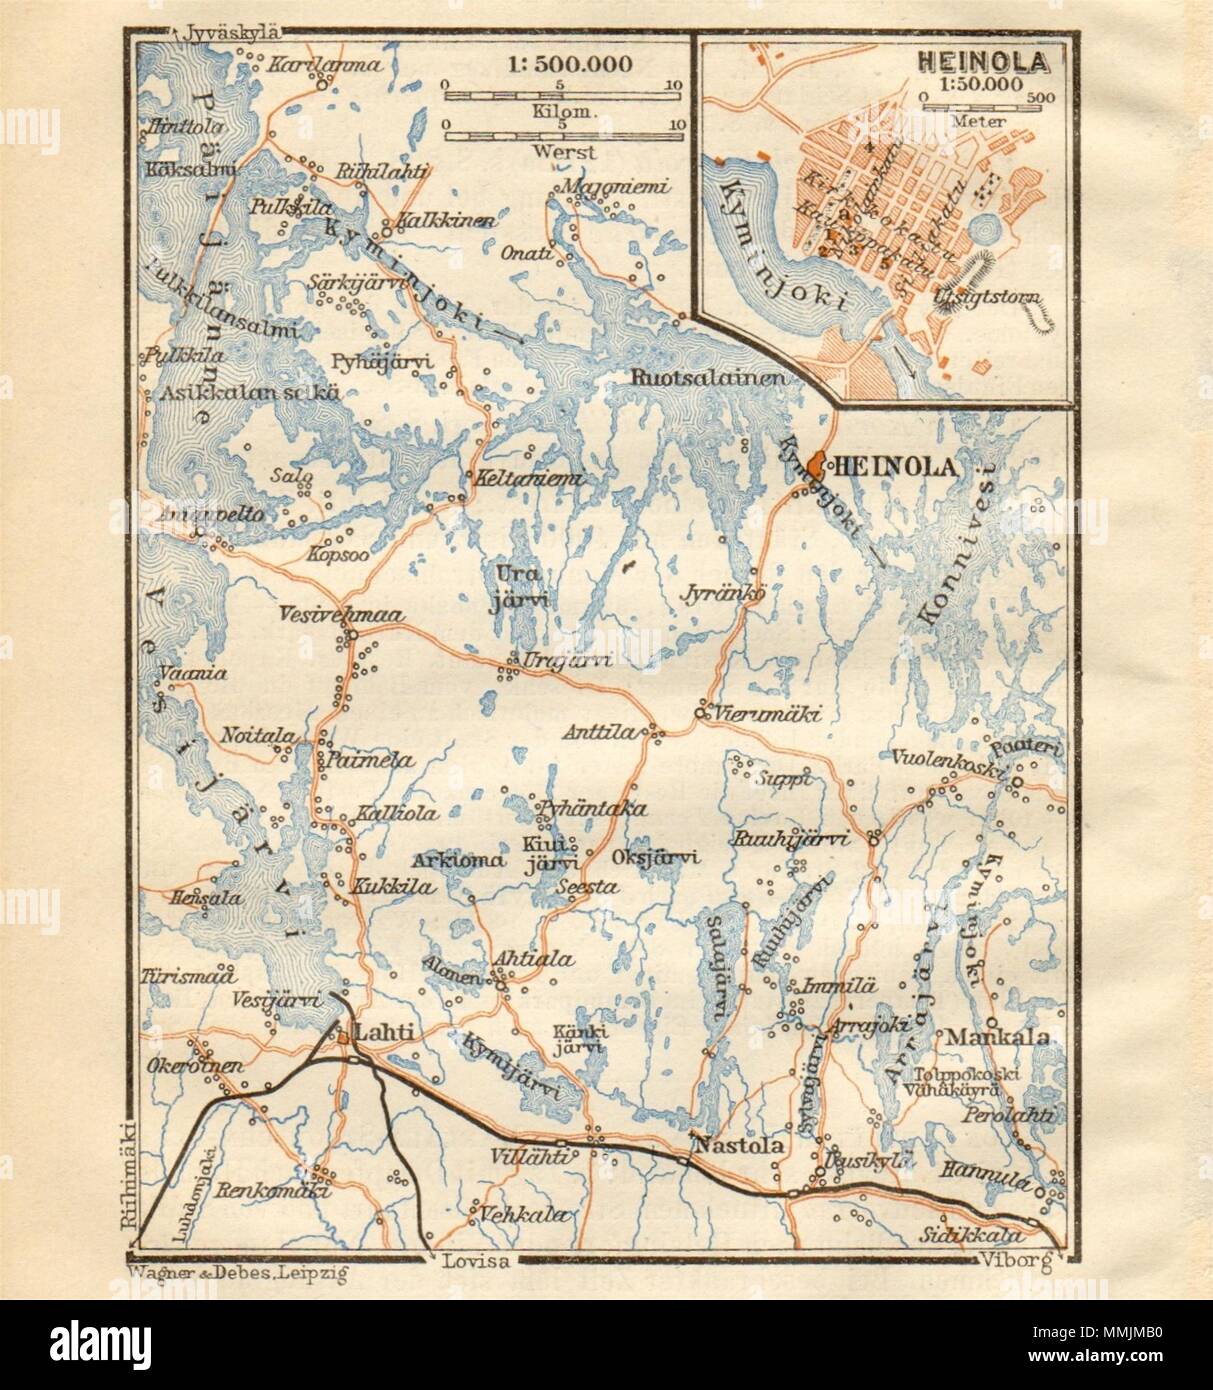 Heinola & Päijänne Tavastia, Finland. BAEDEKER 1912 old antique map plan chart Stock Photo